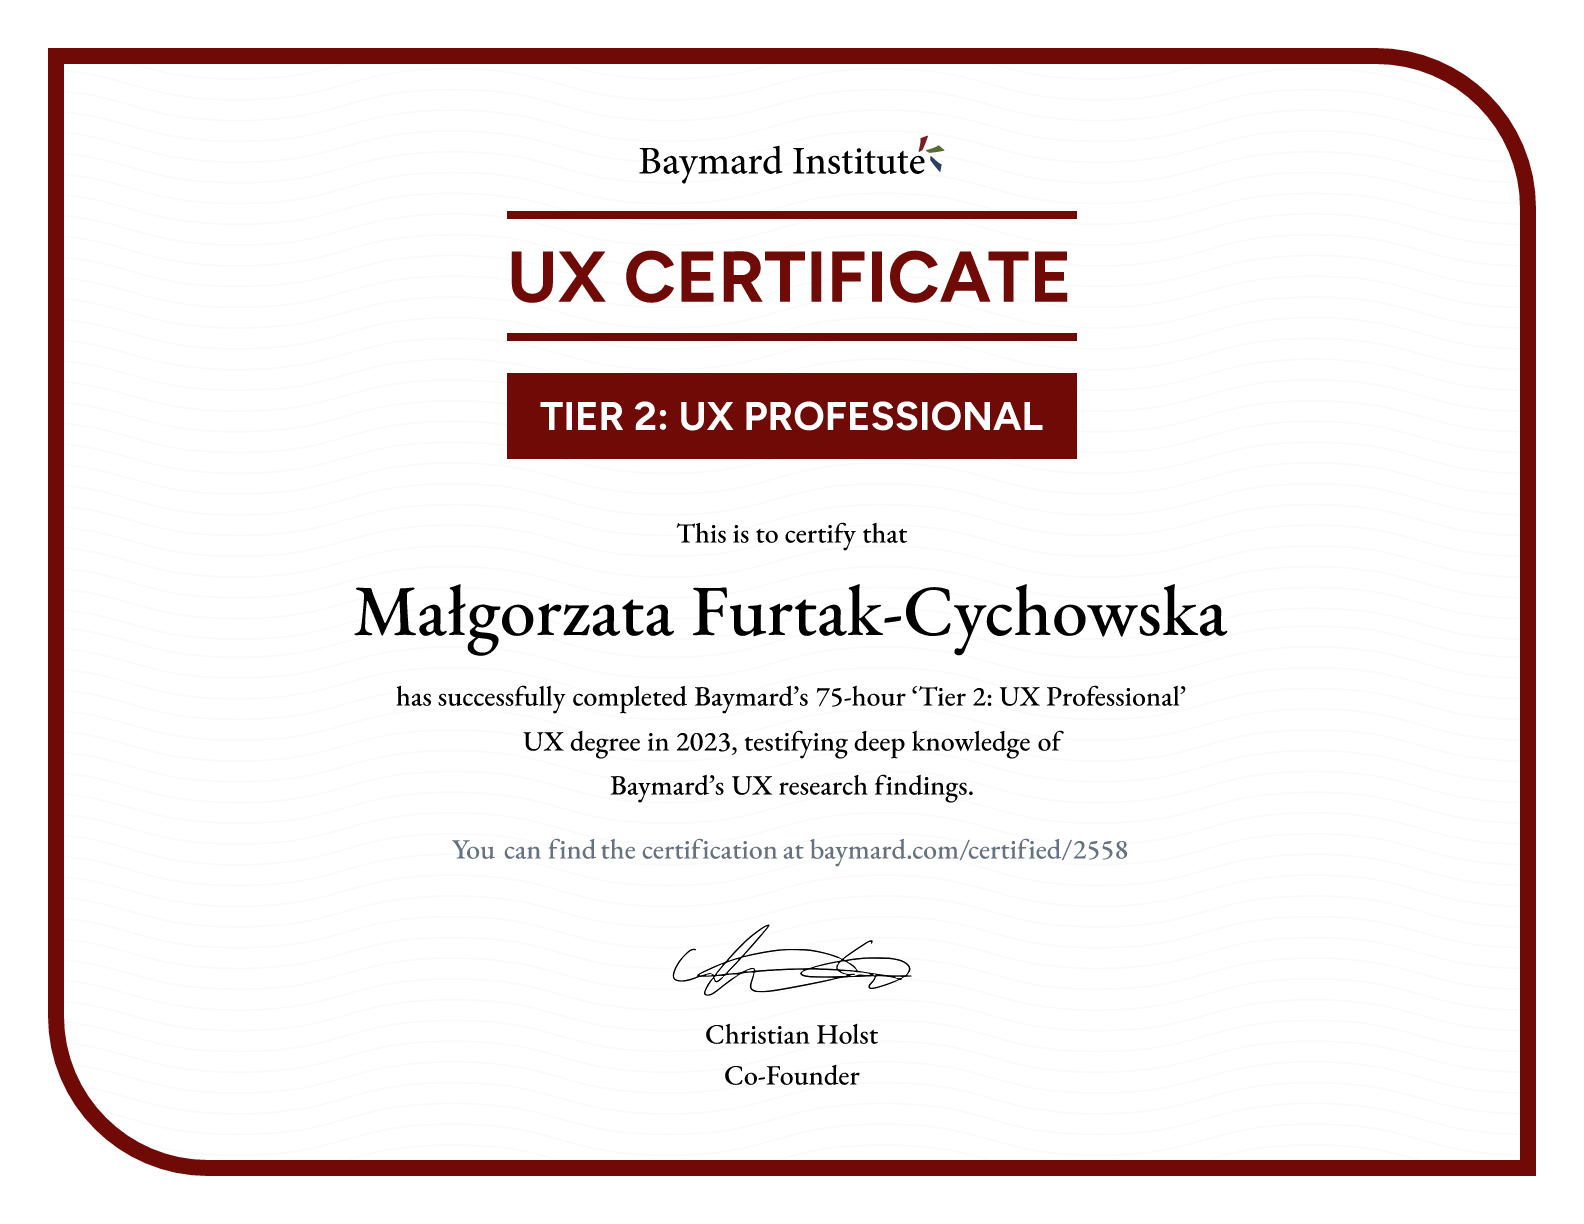 Małgorzata Furtak-Cychowska’s certificate